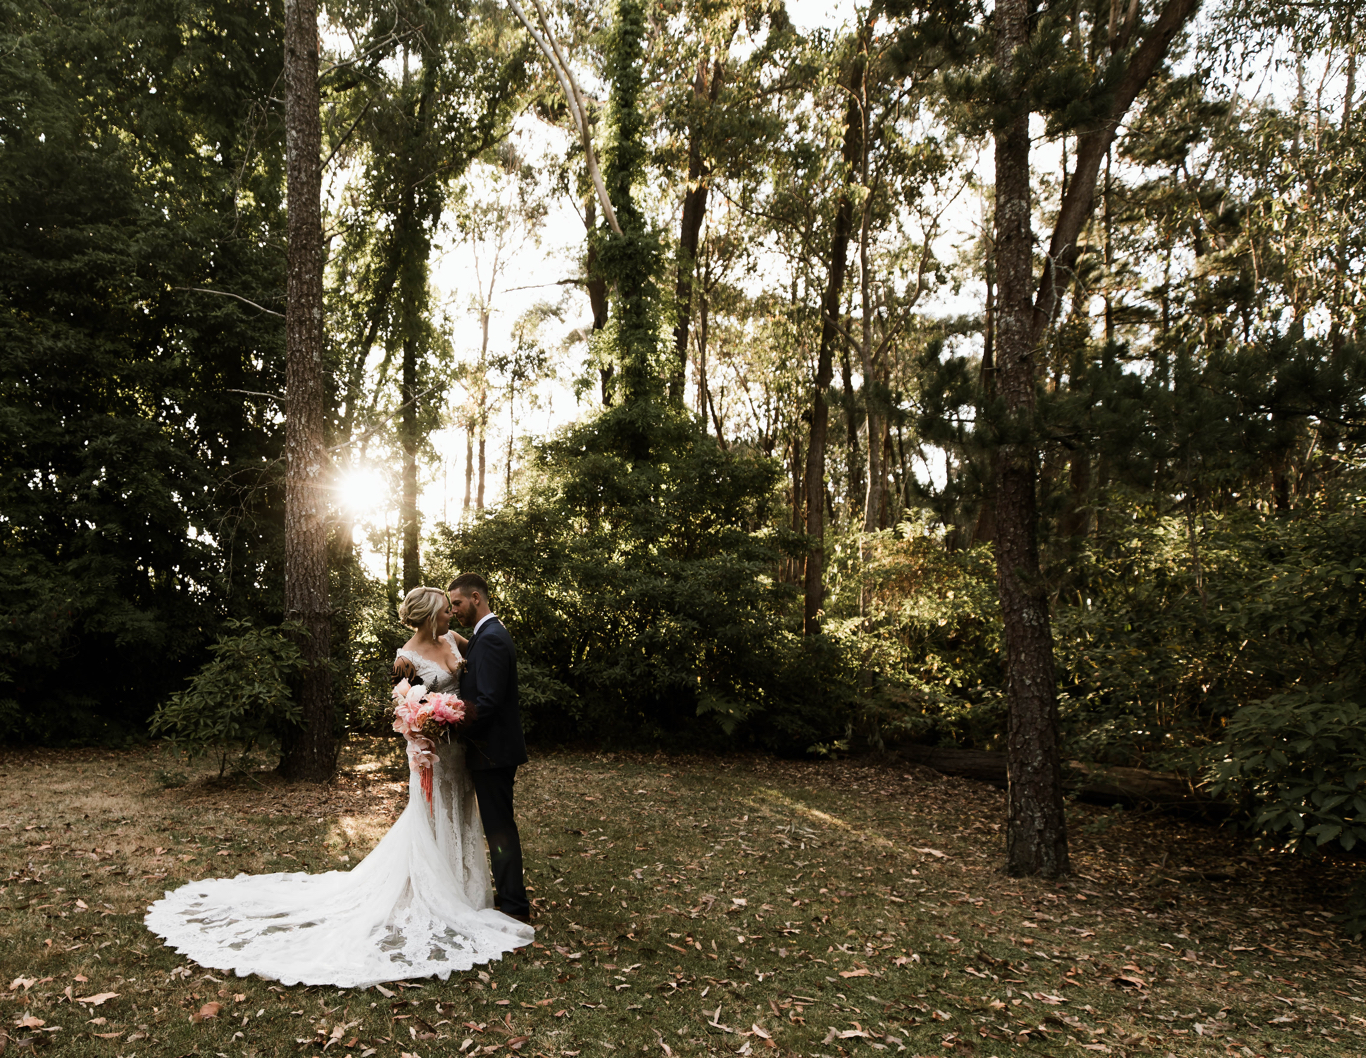 Wedding couple embrace amongst sunlit bushland.